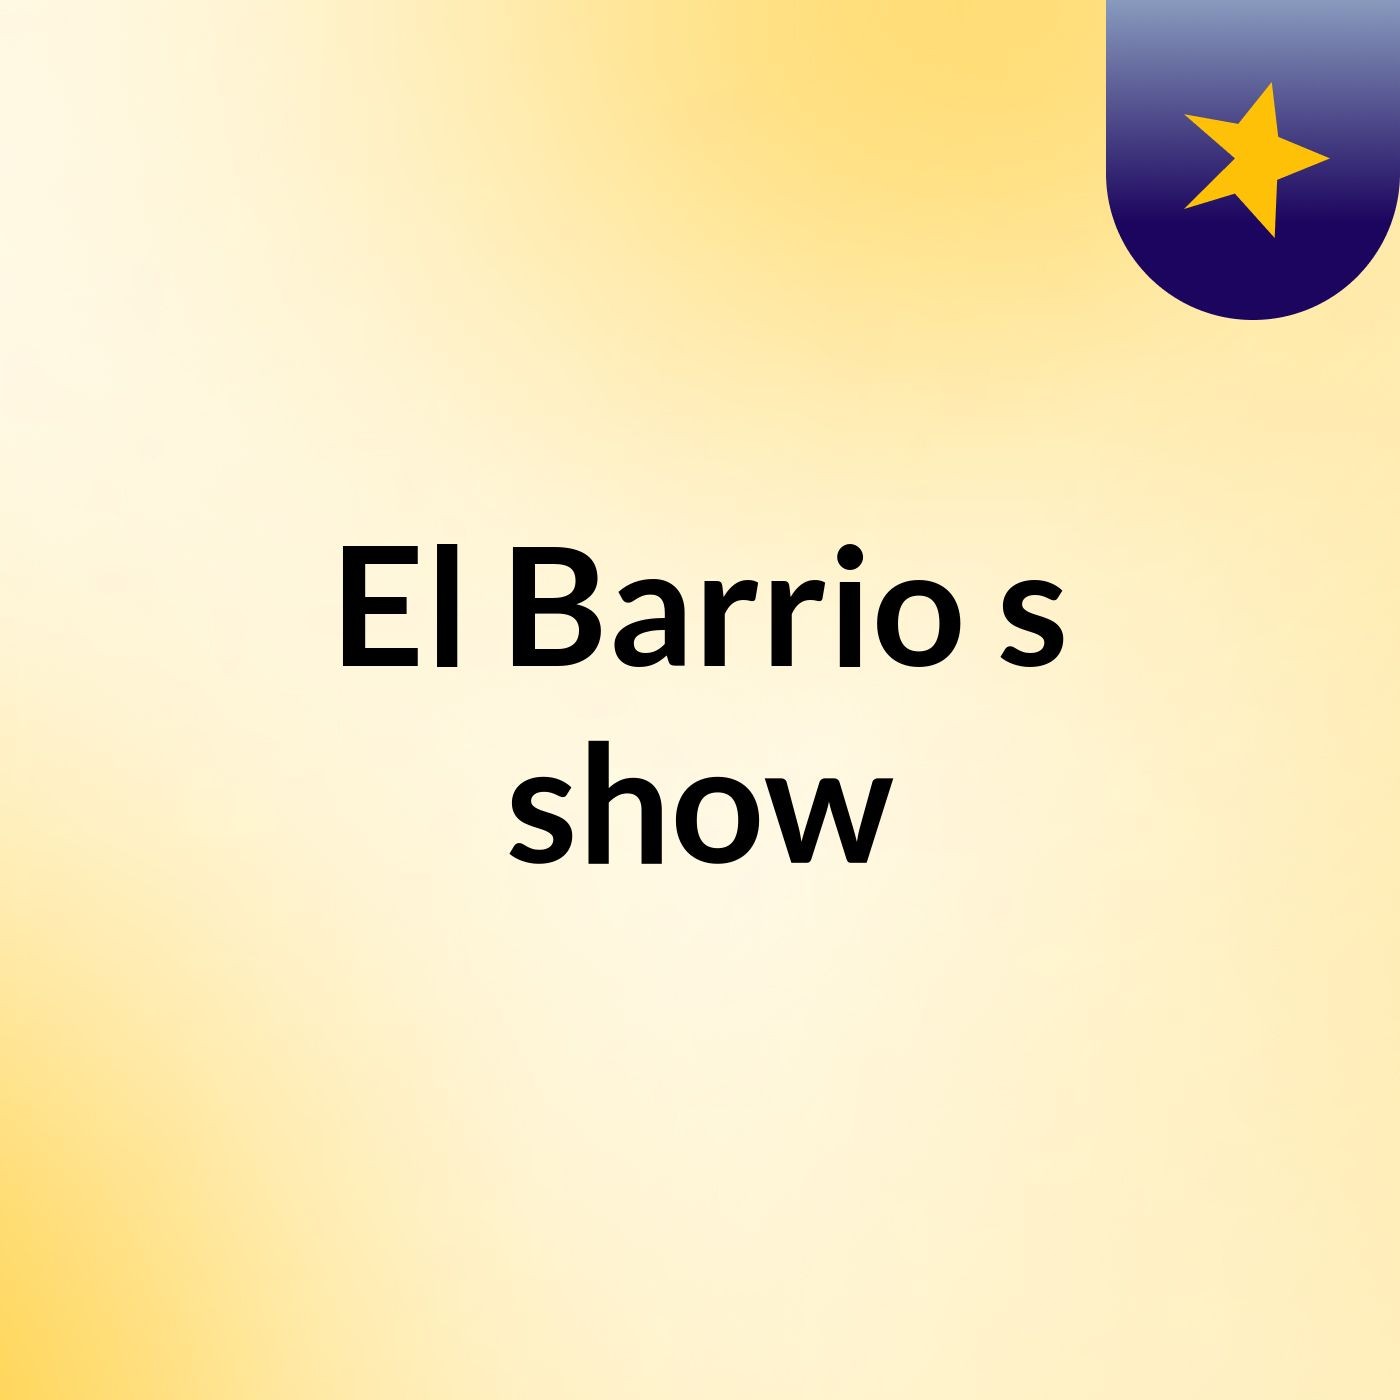 El Barrio's show